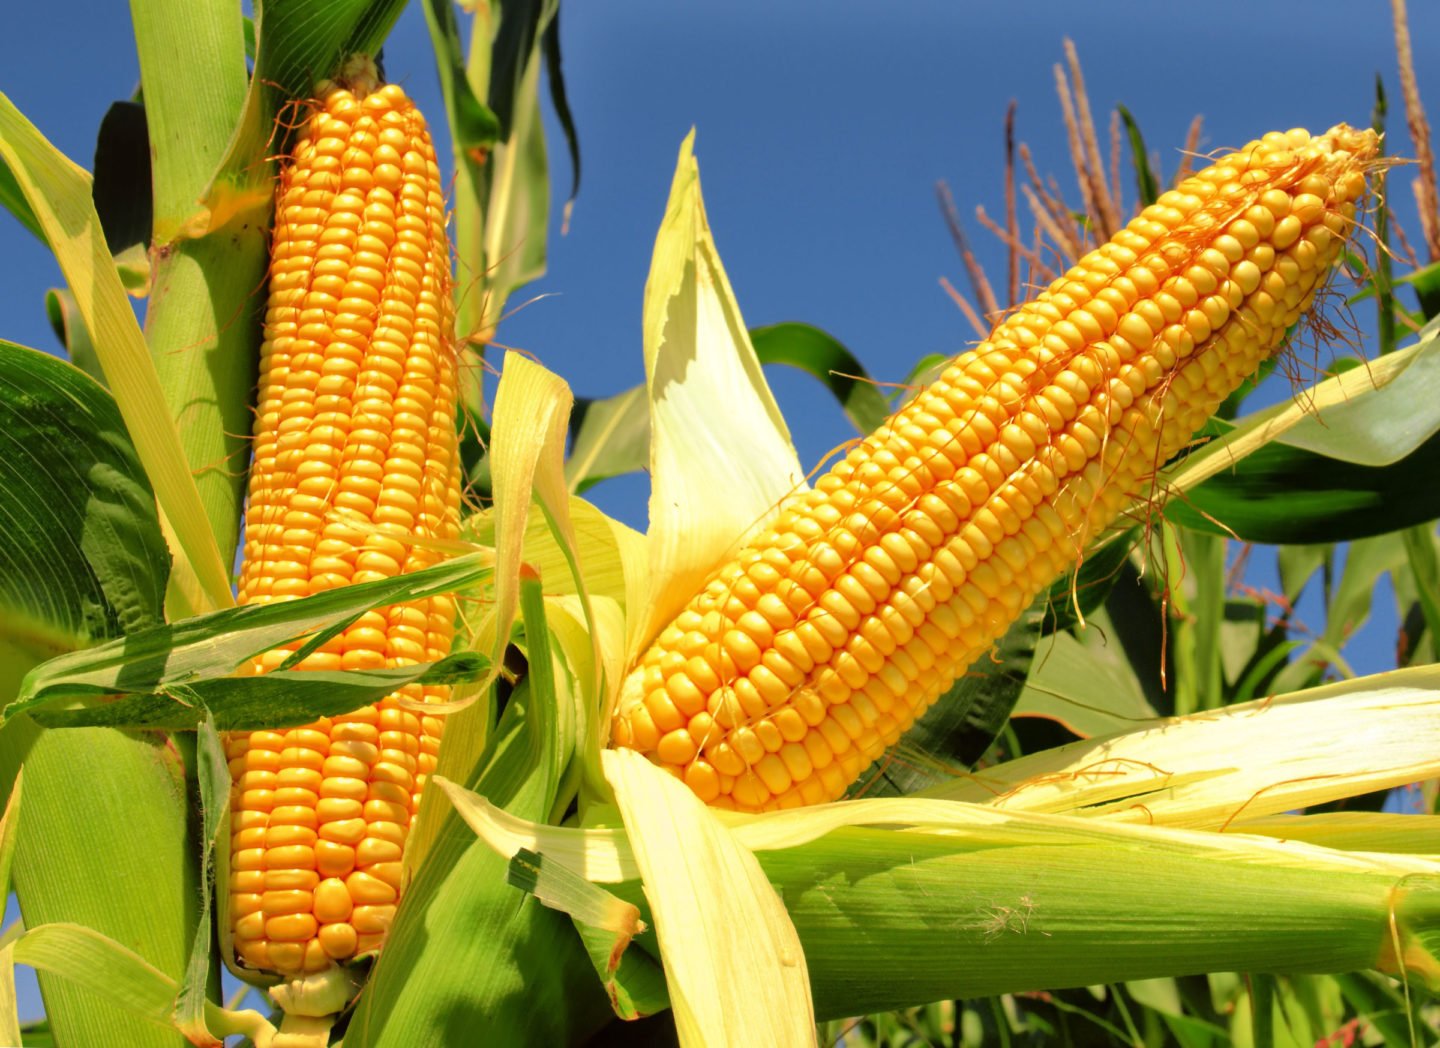 corn cobs on a stalk